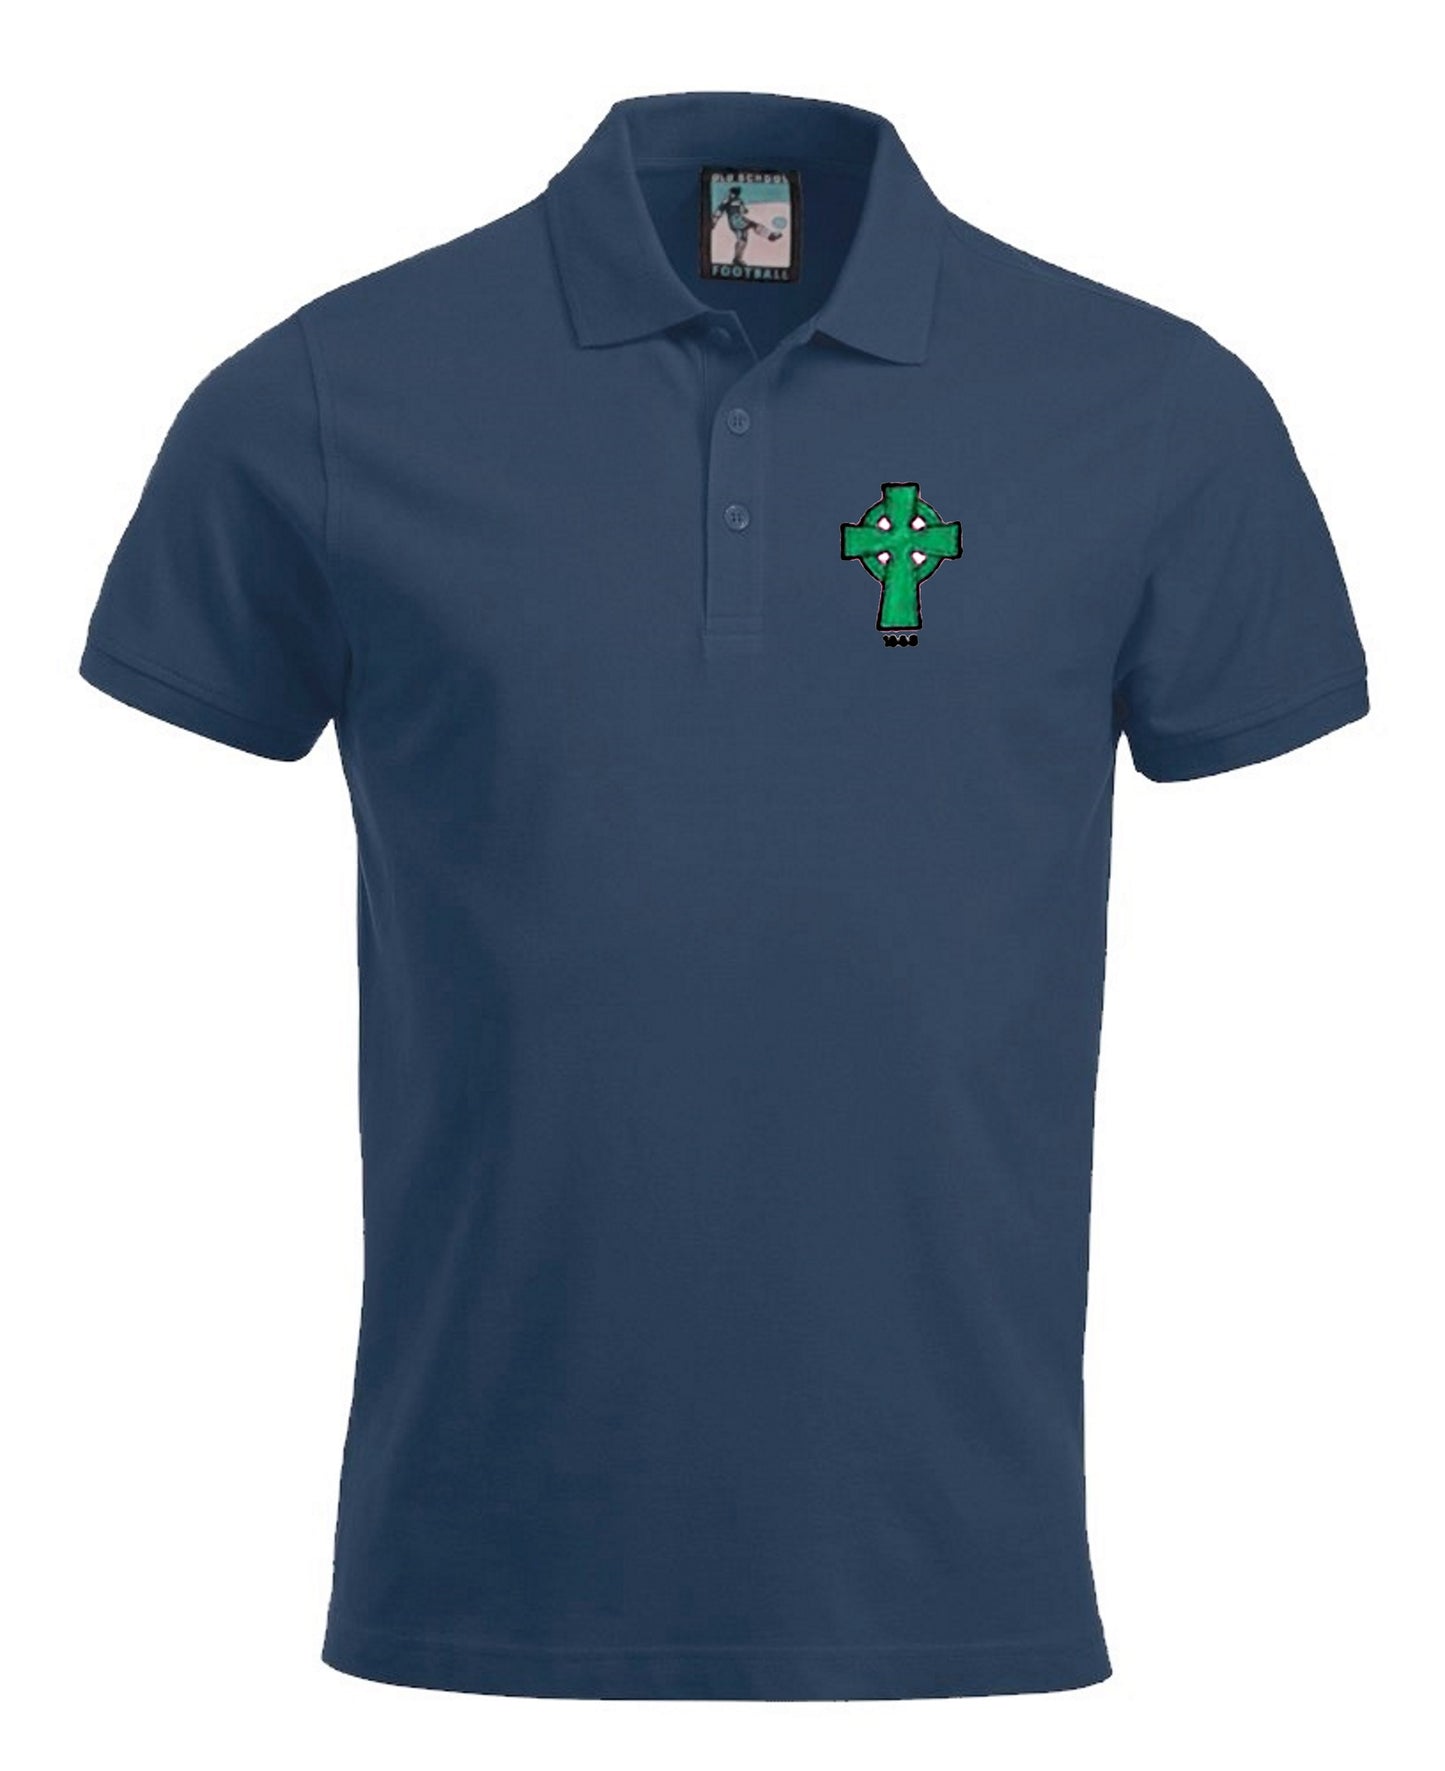 Celtic Retro Football 1888 Polo Shirt - Polo